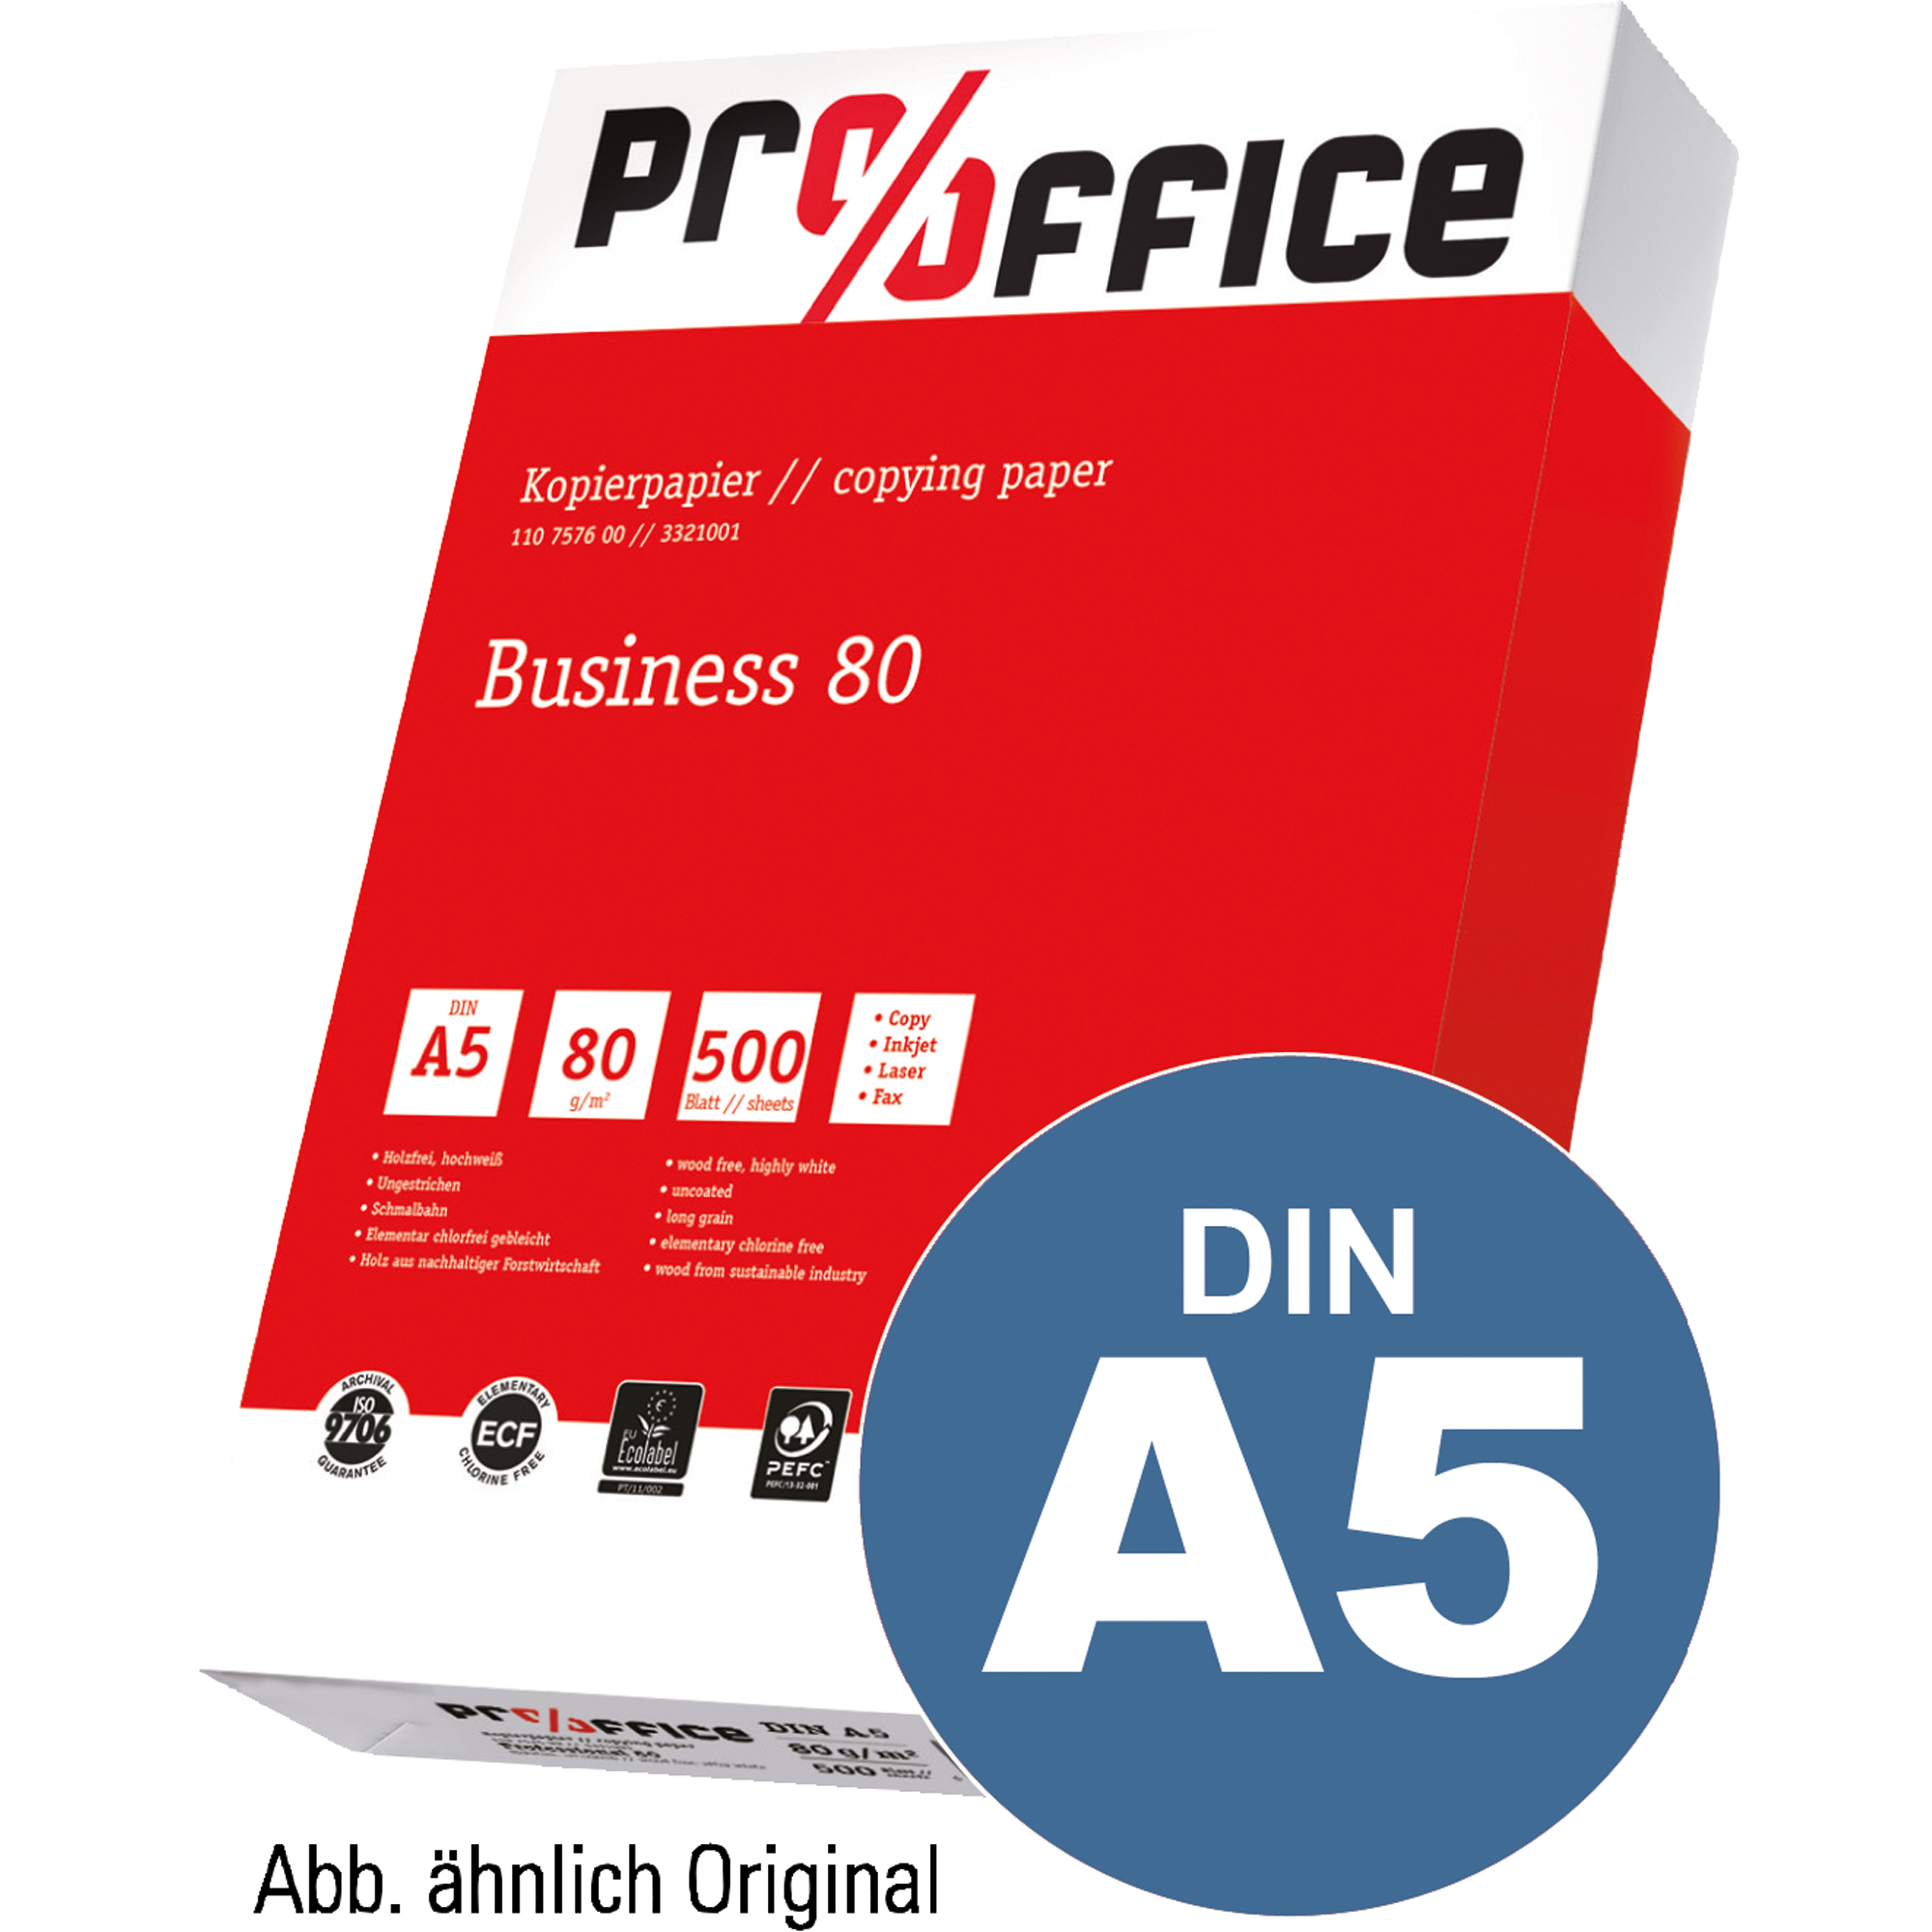 Pro/Office Kopierpapier Business DIN A5 80 g/m²